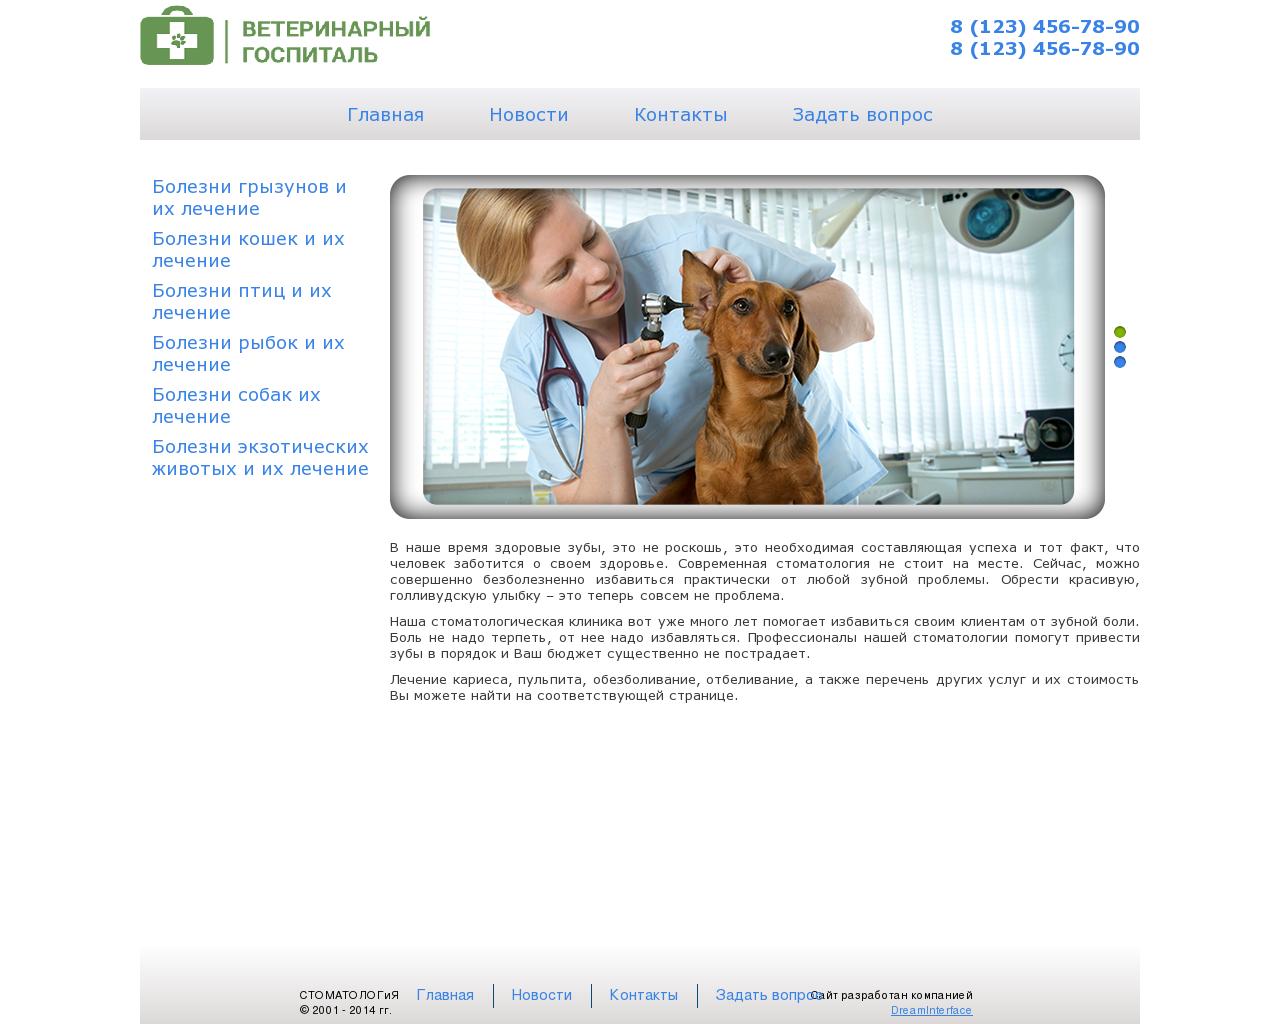 Изображение сайта vethospital.su в разрешении 1280x1024